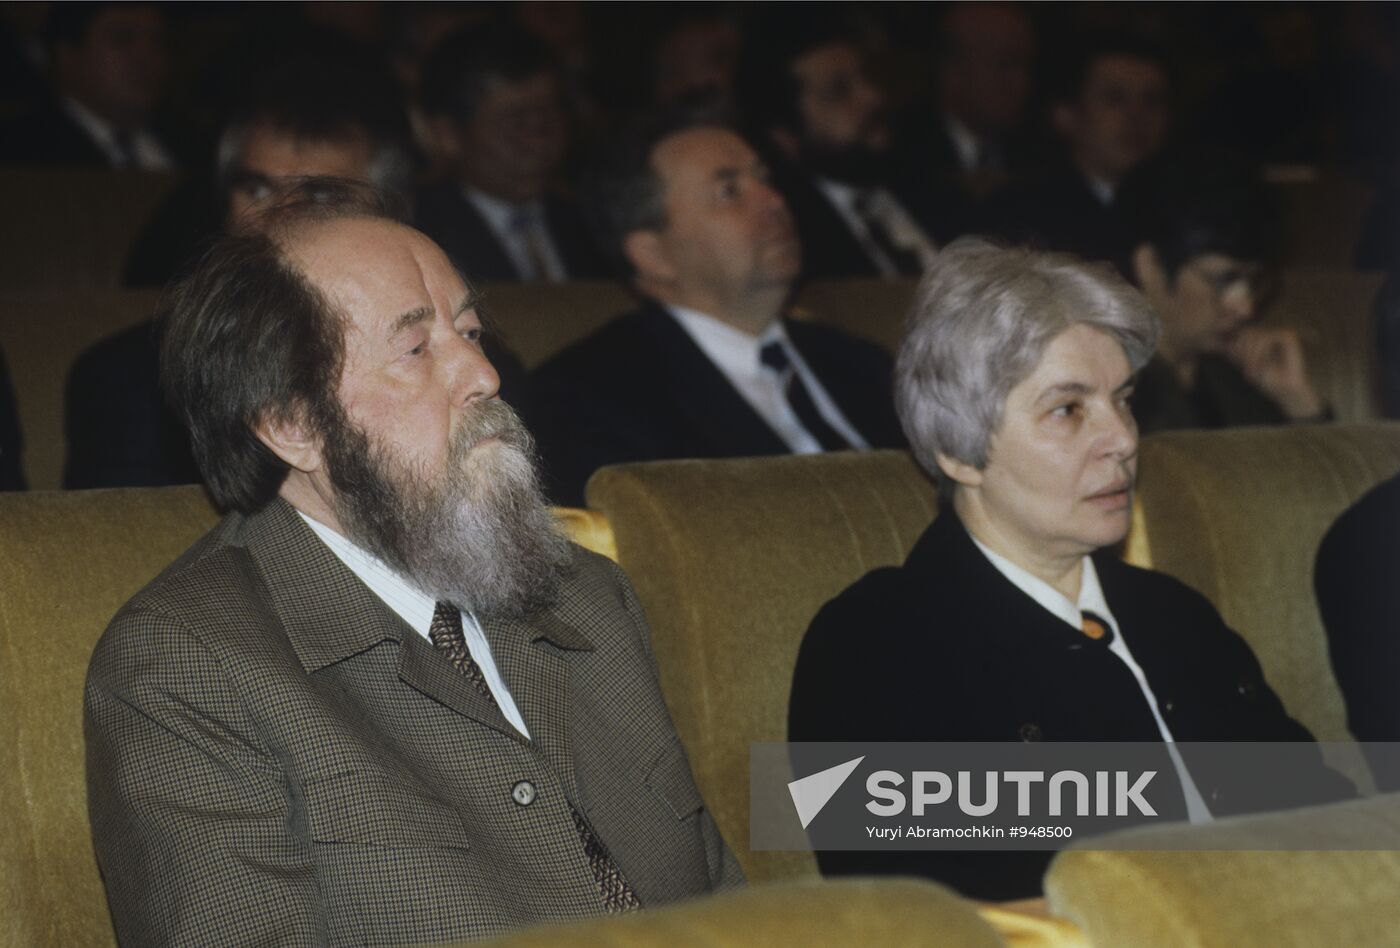 Alexander Solzhenitsyn and his wife, Natalya Svetlova